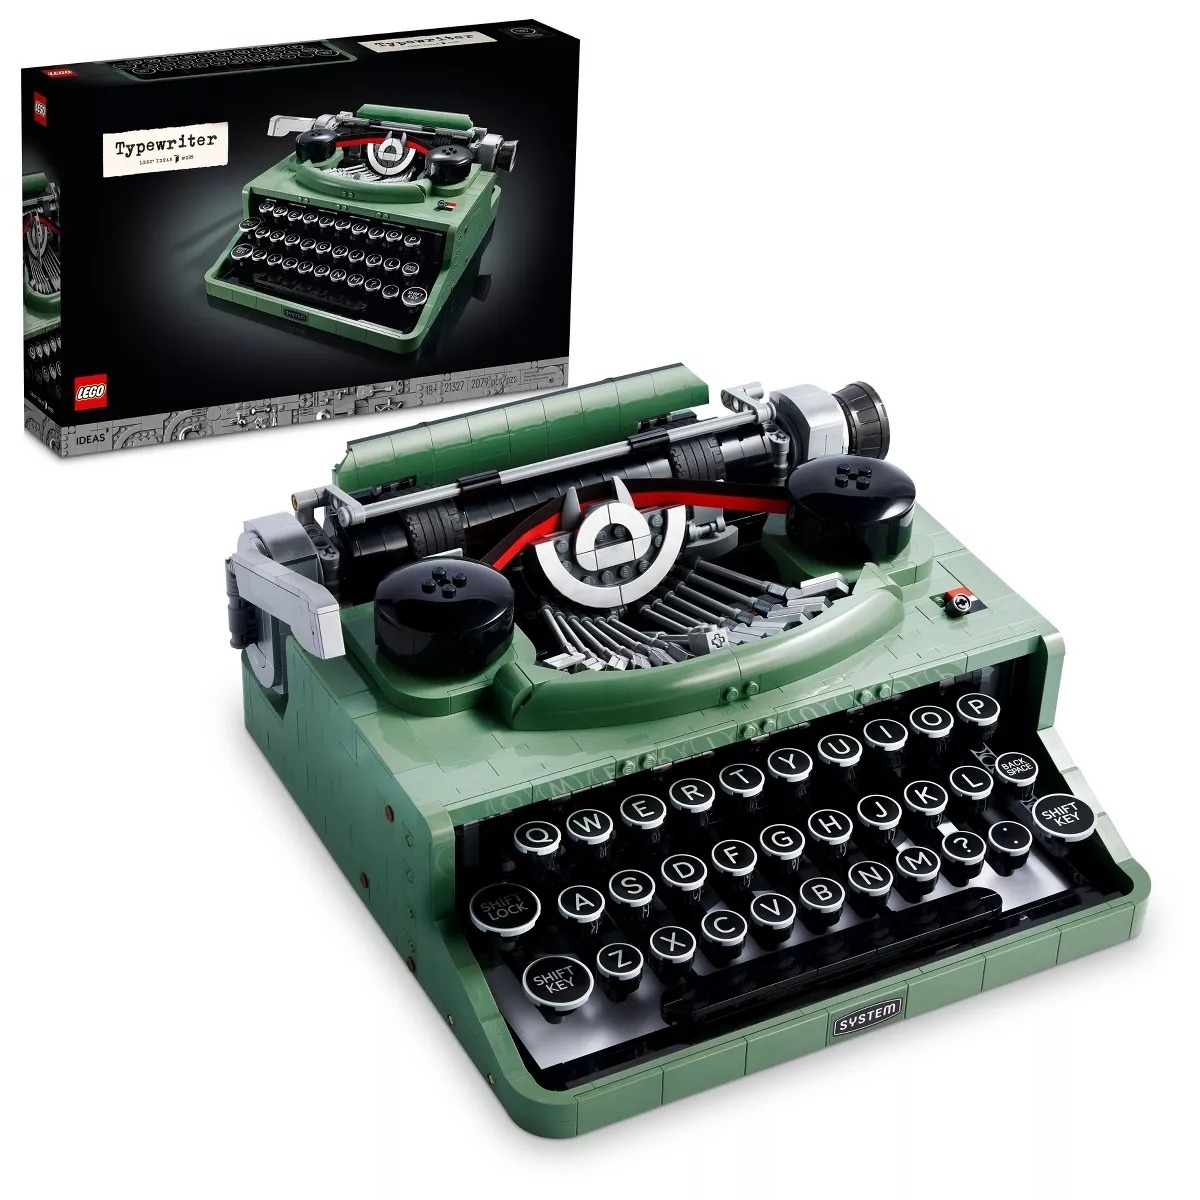 Lego Typerwriter